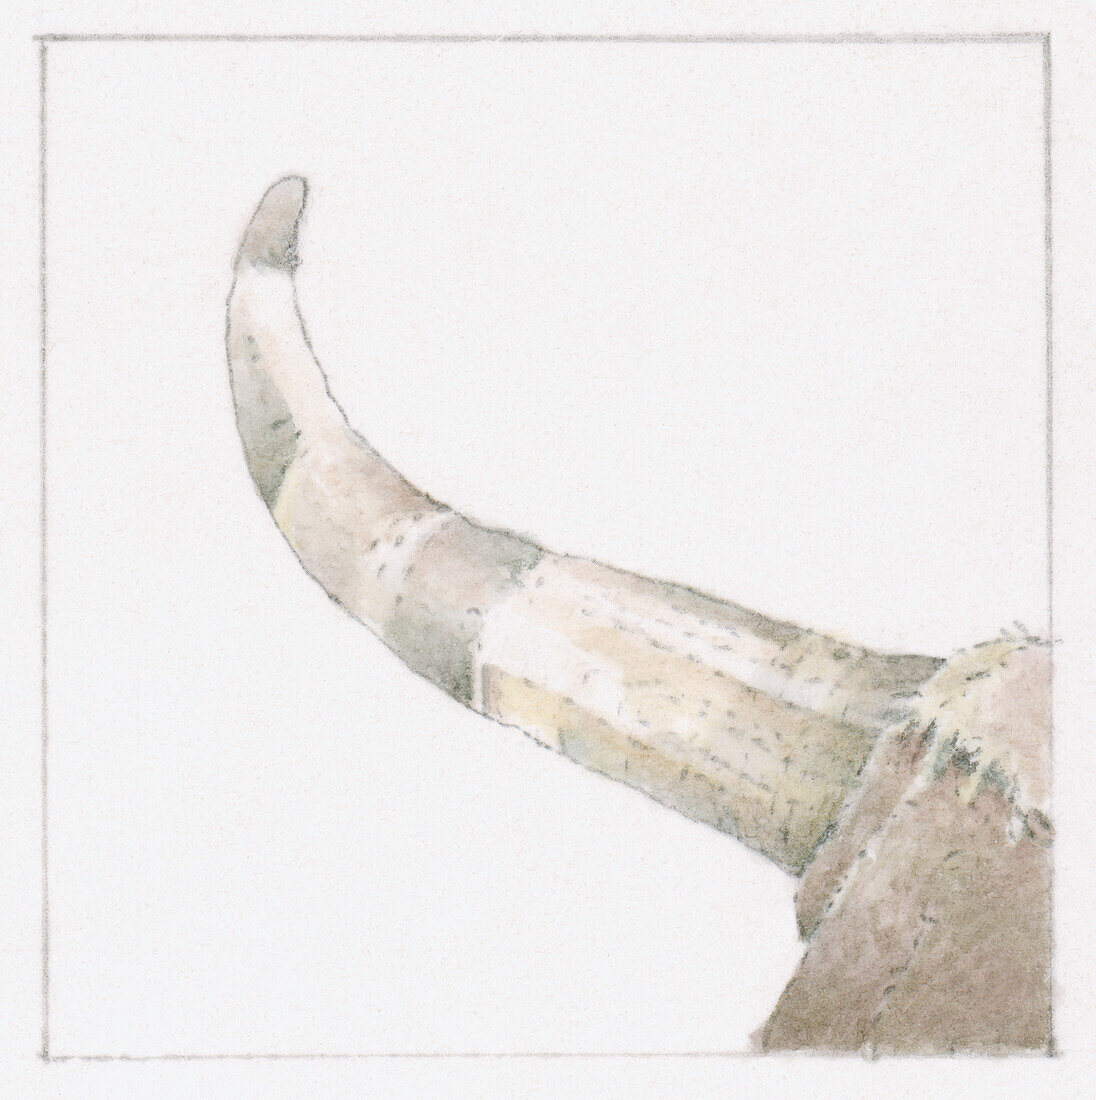 Ox's horn, illustration